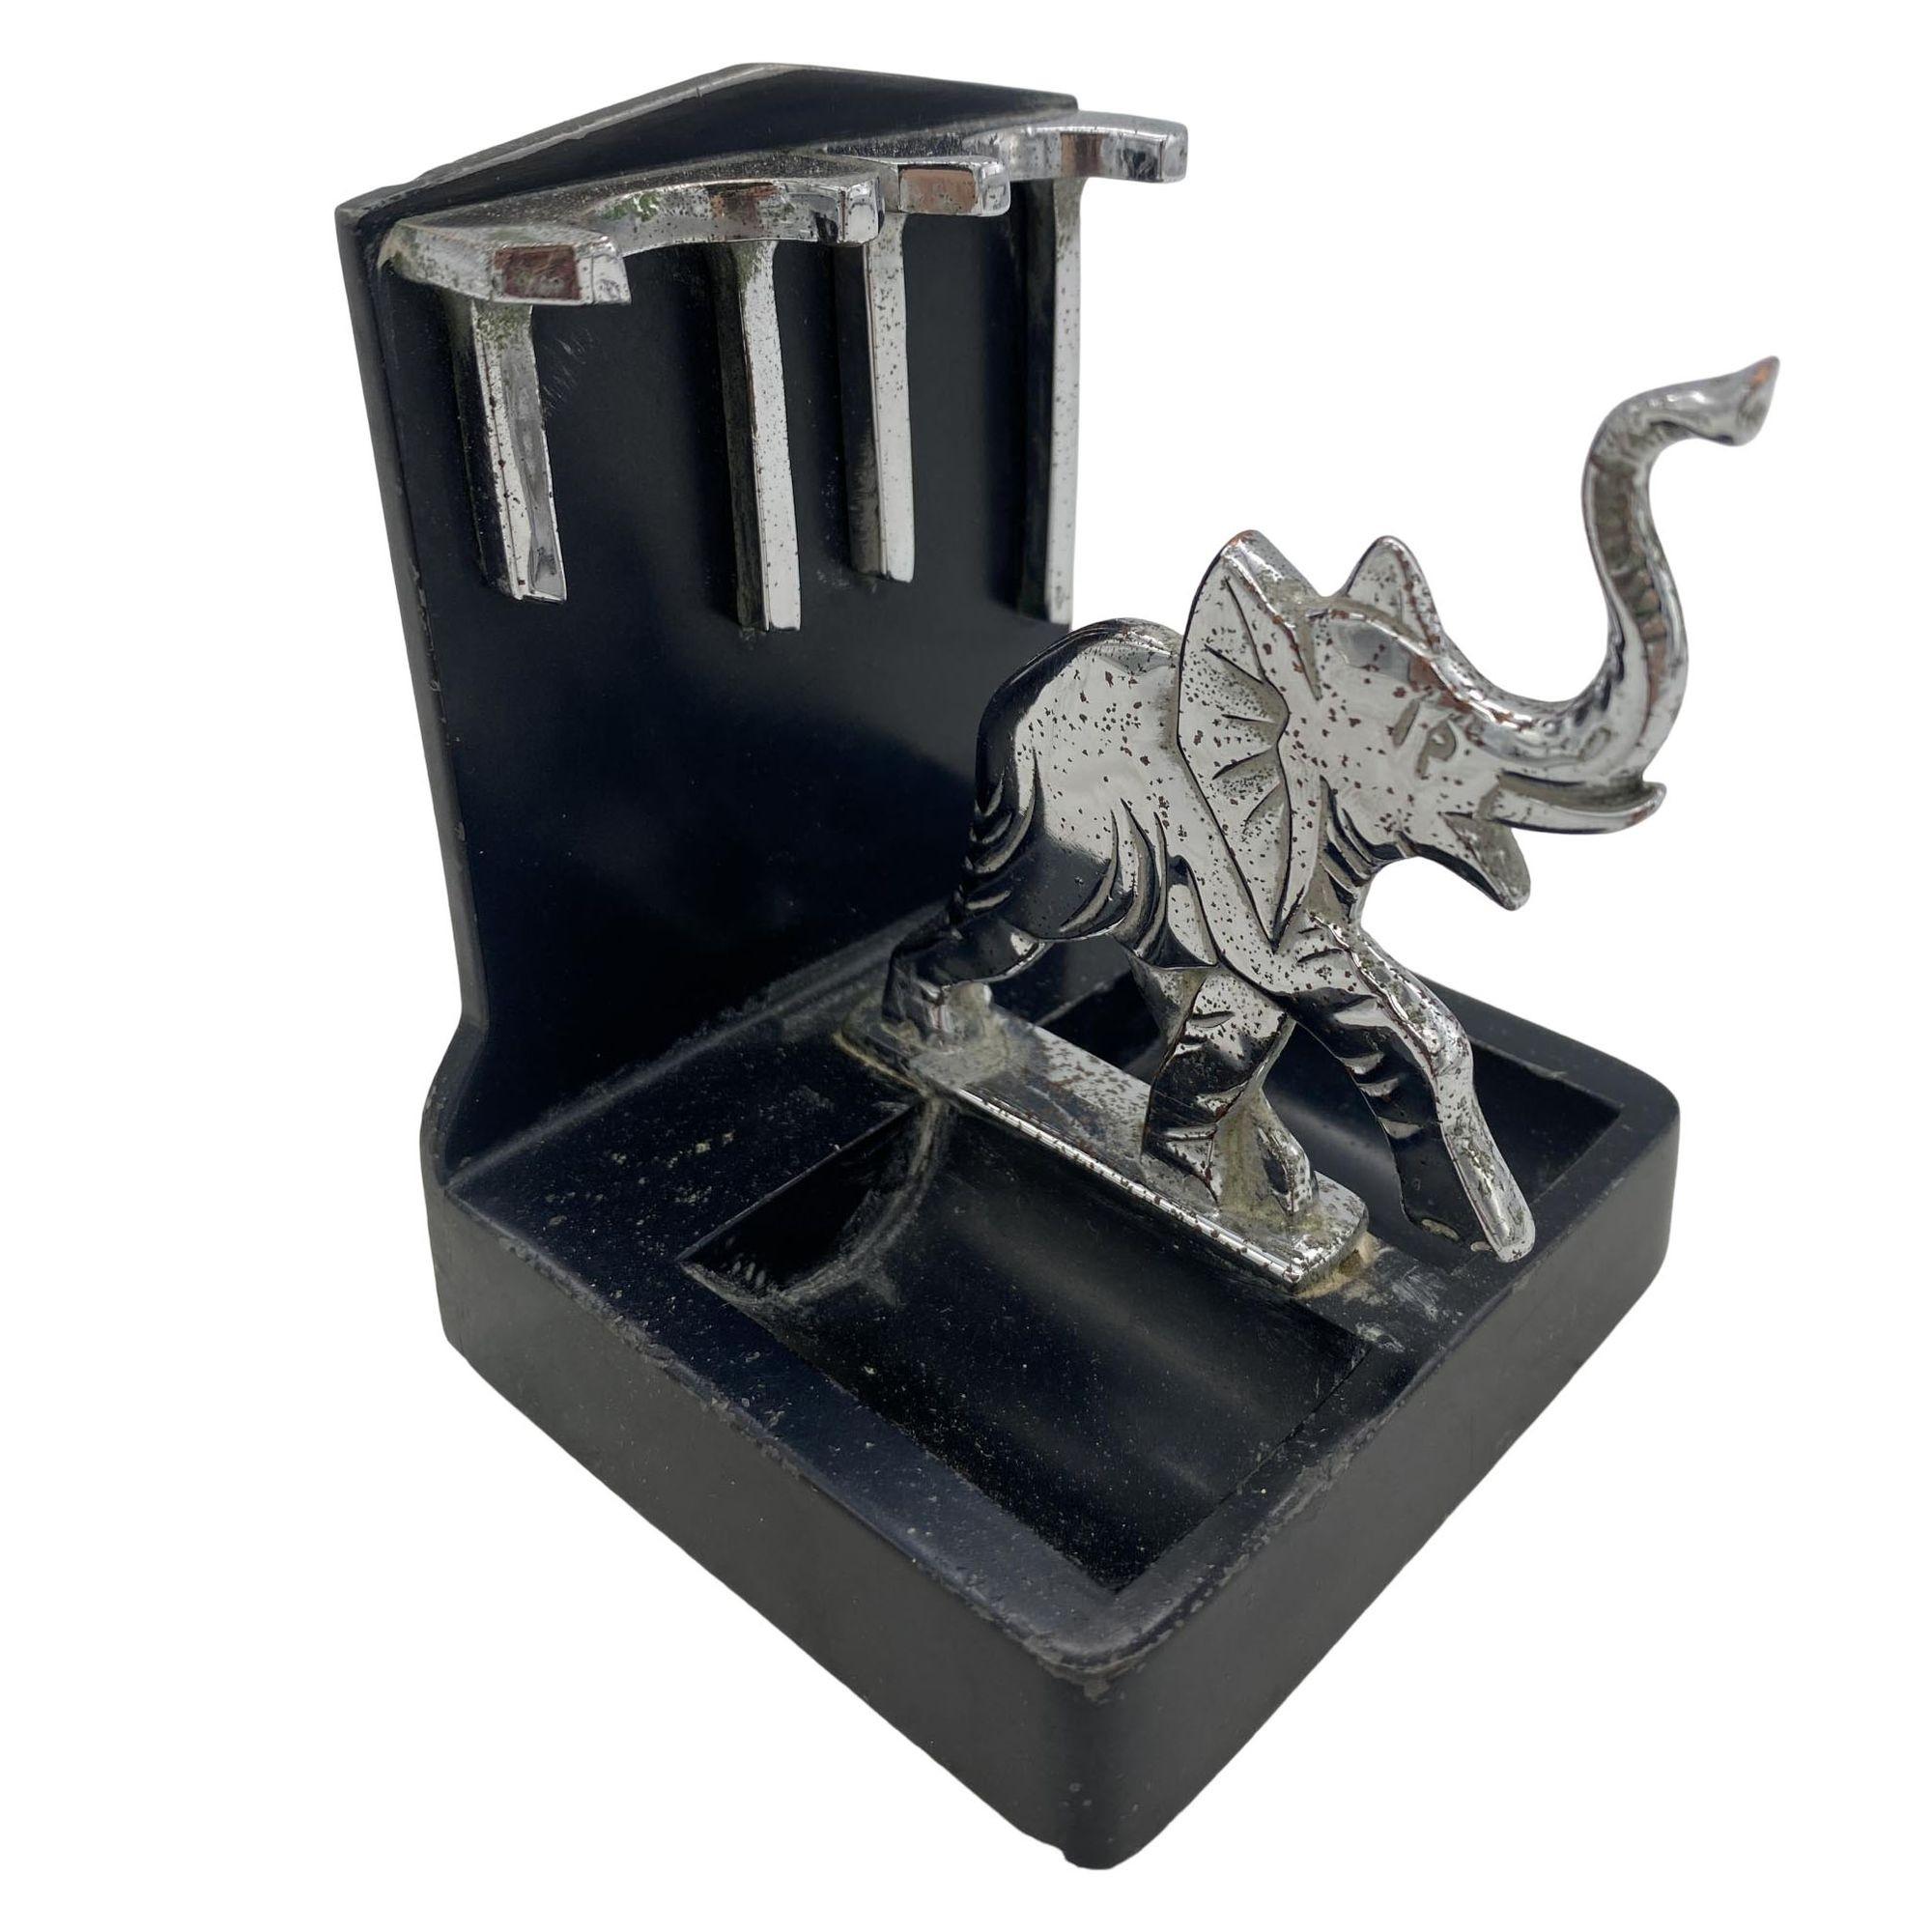 Un porte-pipes éléphant ronson avec un éléphant chromé et des accents avec une base en poudre noire. Il est répertorié dans la publicité 